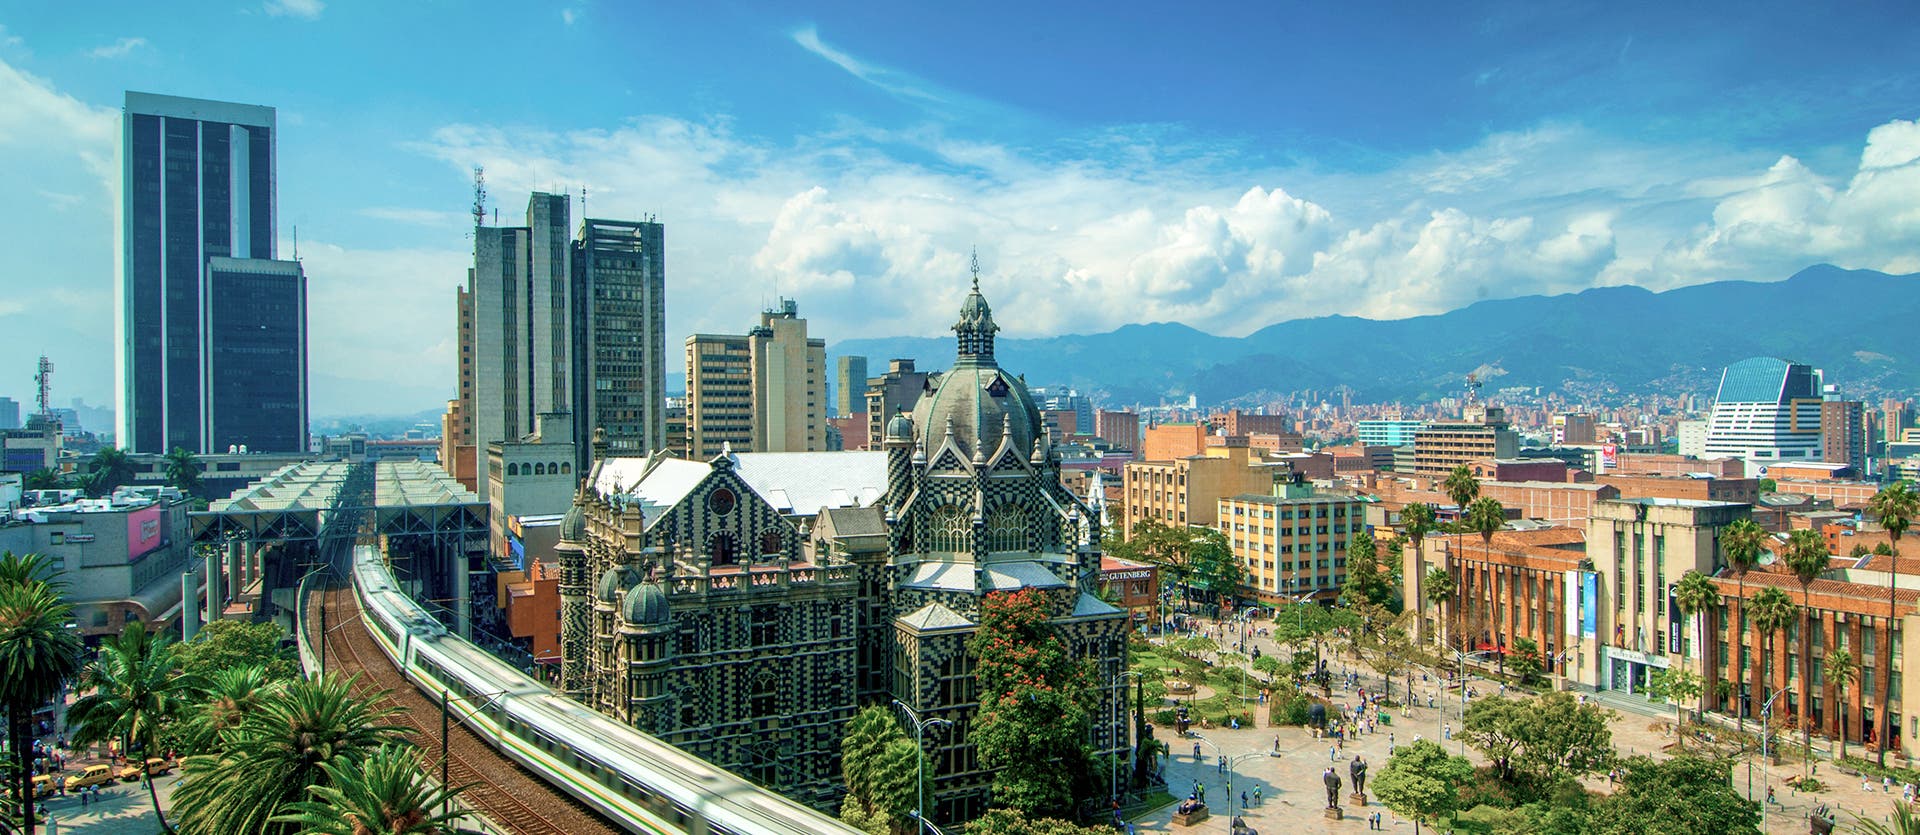 Qué ver en Colombia Medellín